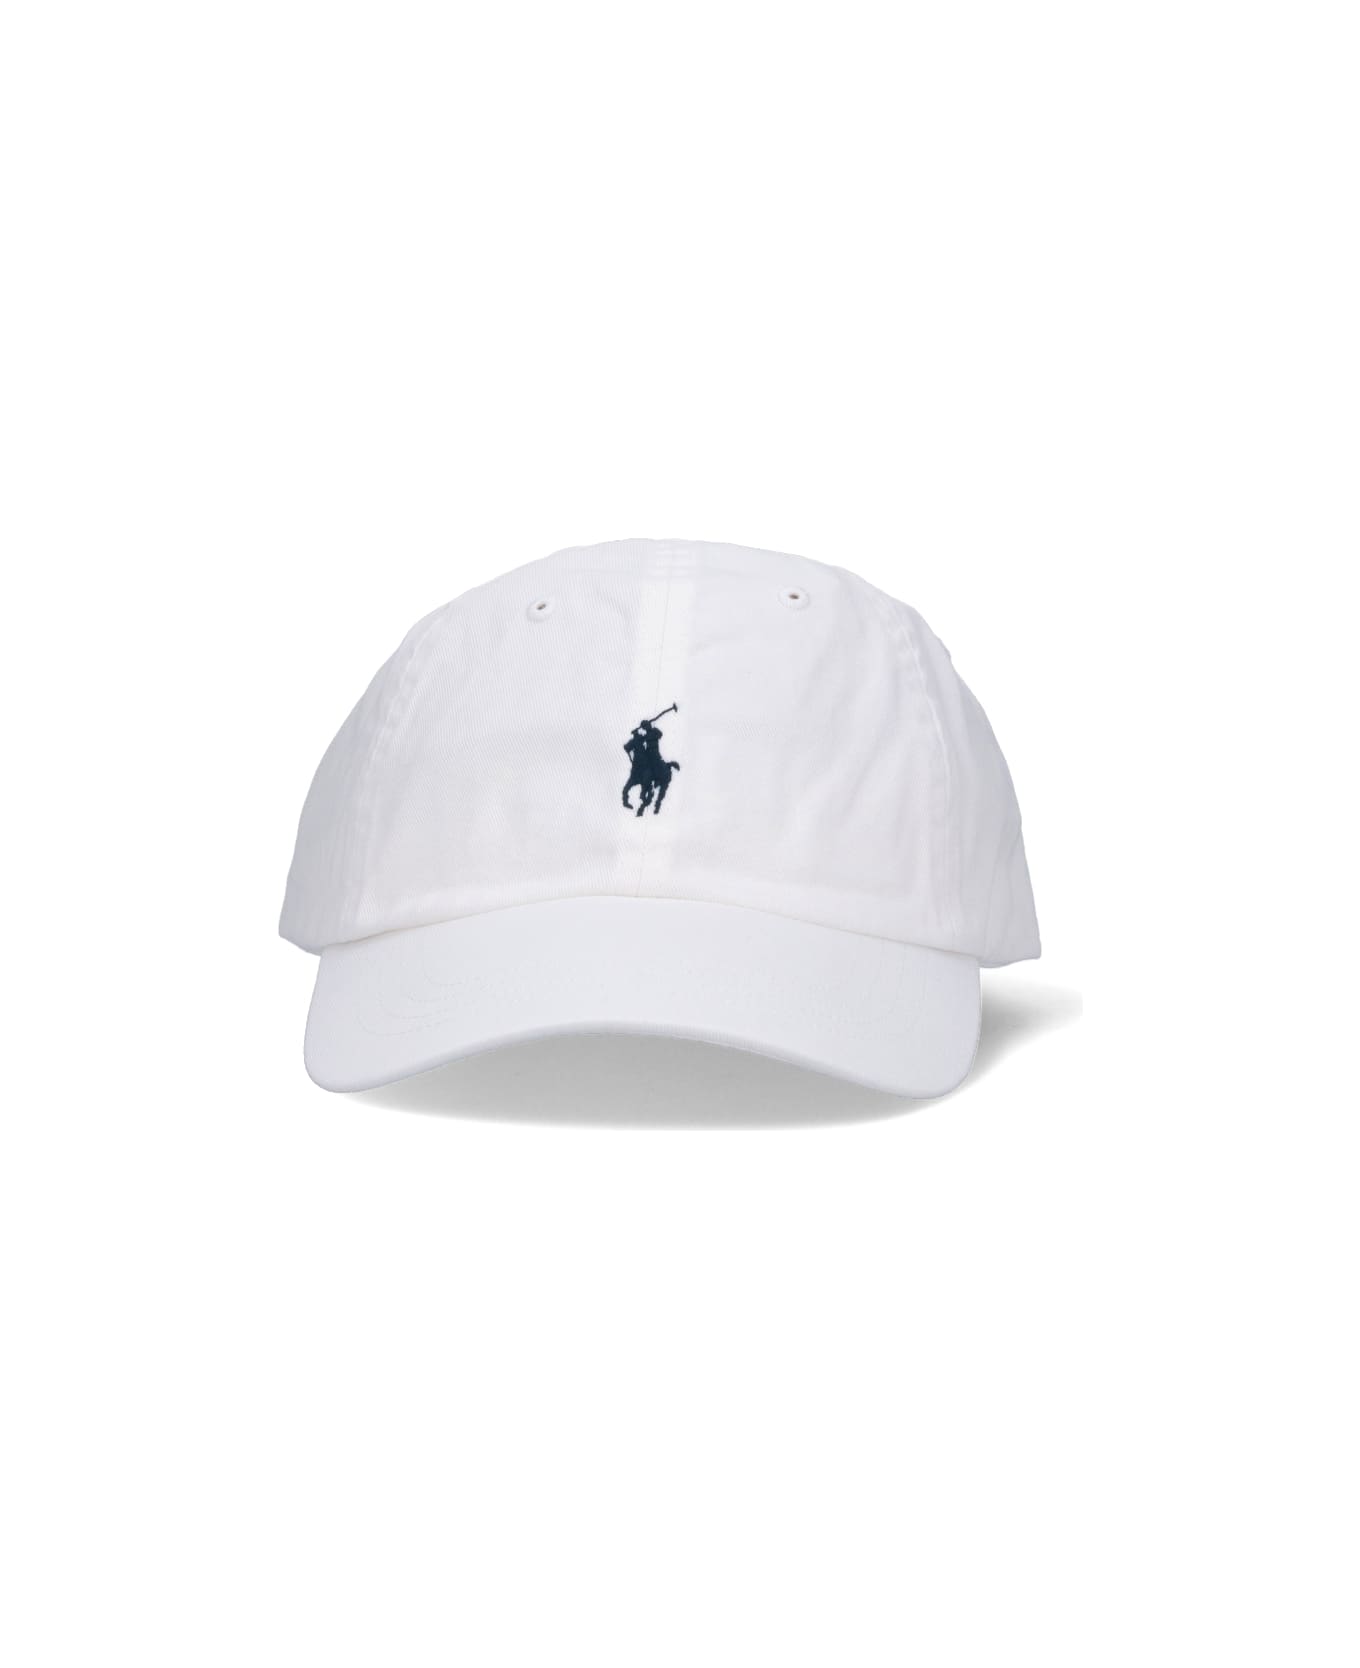 Polo Ralph Lauren Logo Baseball Hat Hat - WHITE/NAVY